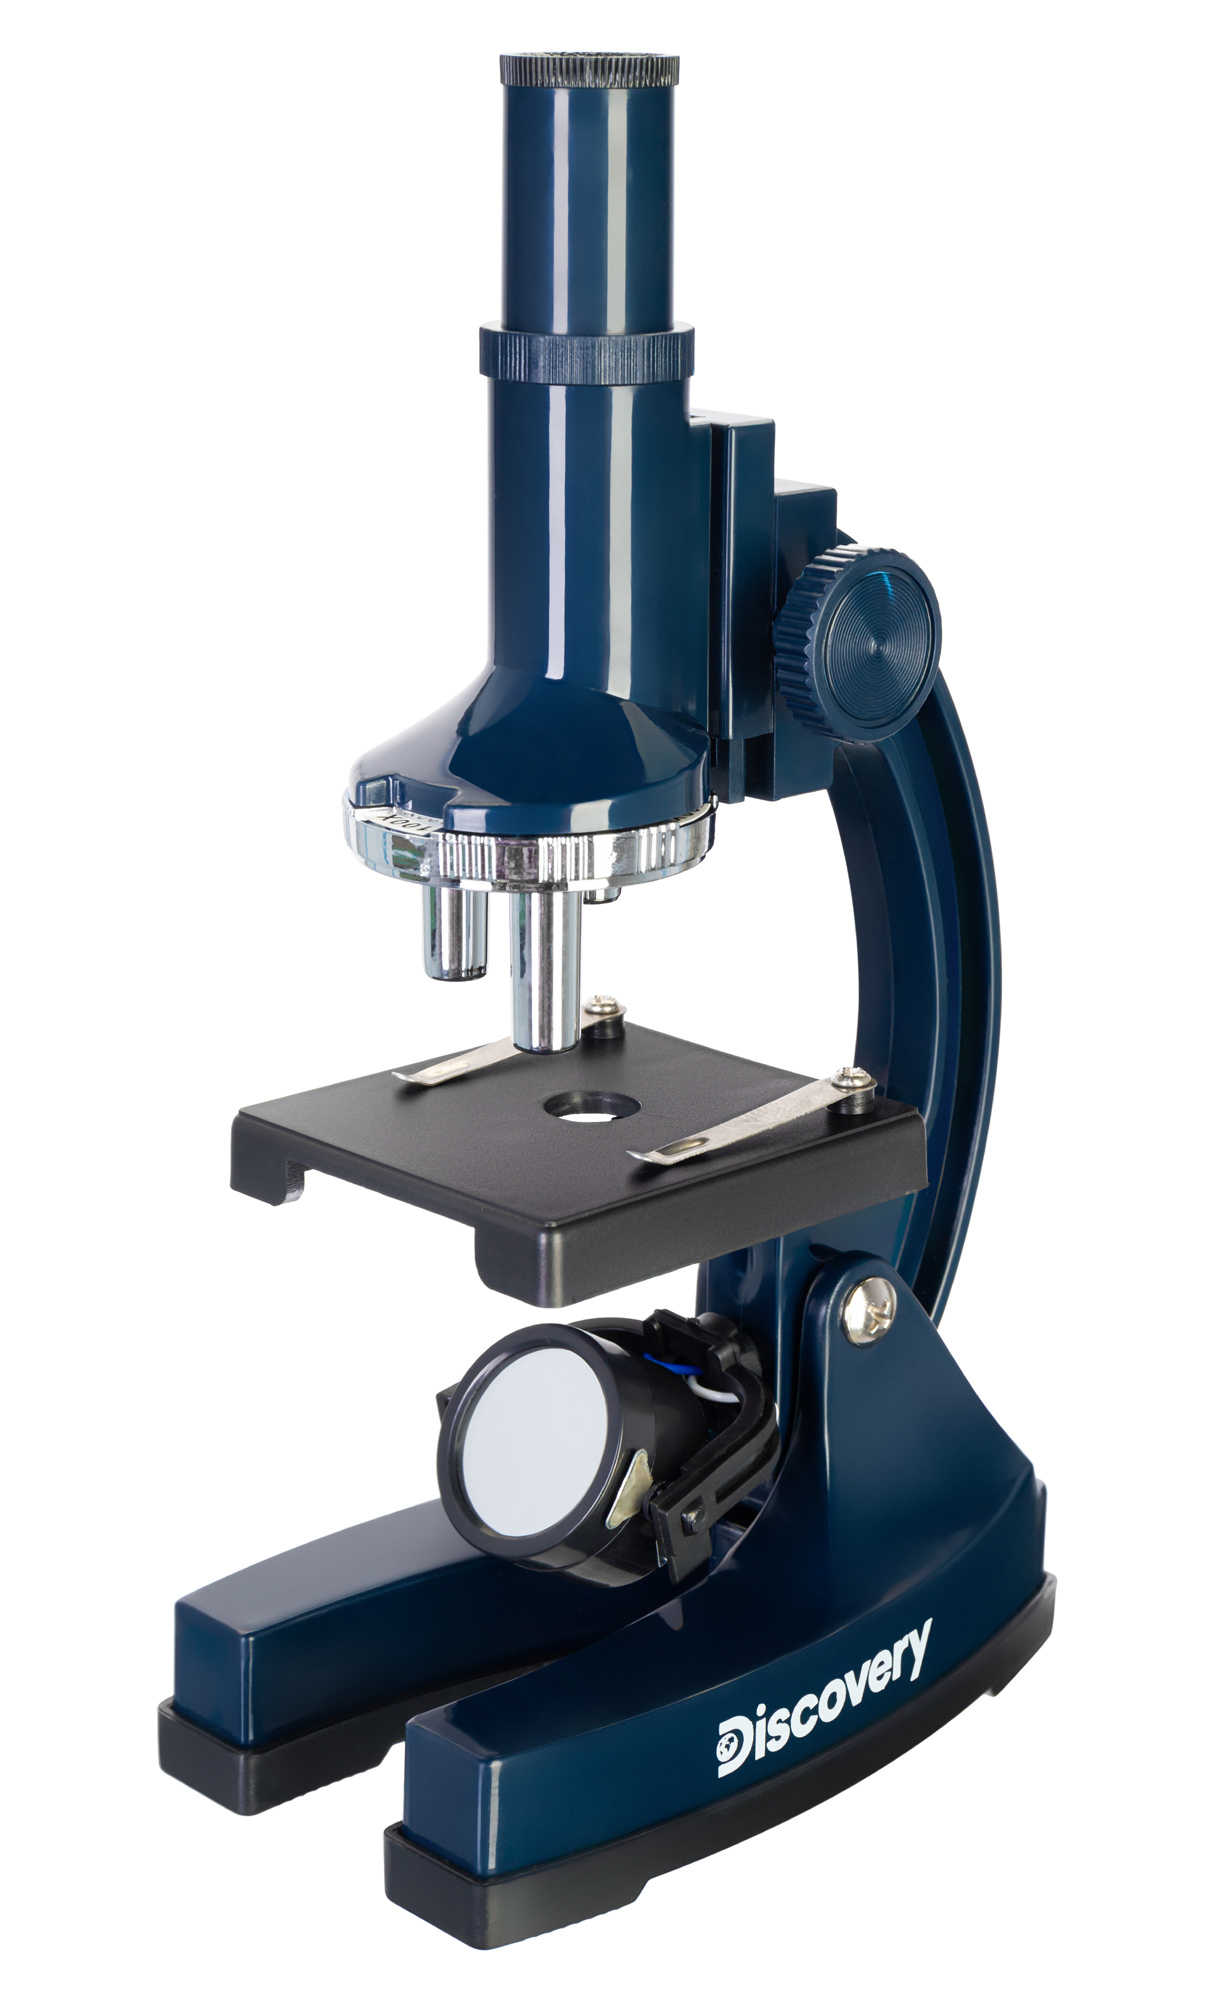 

Микроскоп Levenhuk (Левенгук) Discovery Centi 01 с книгой